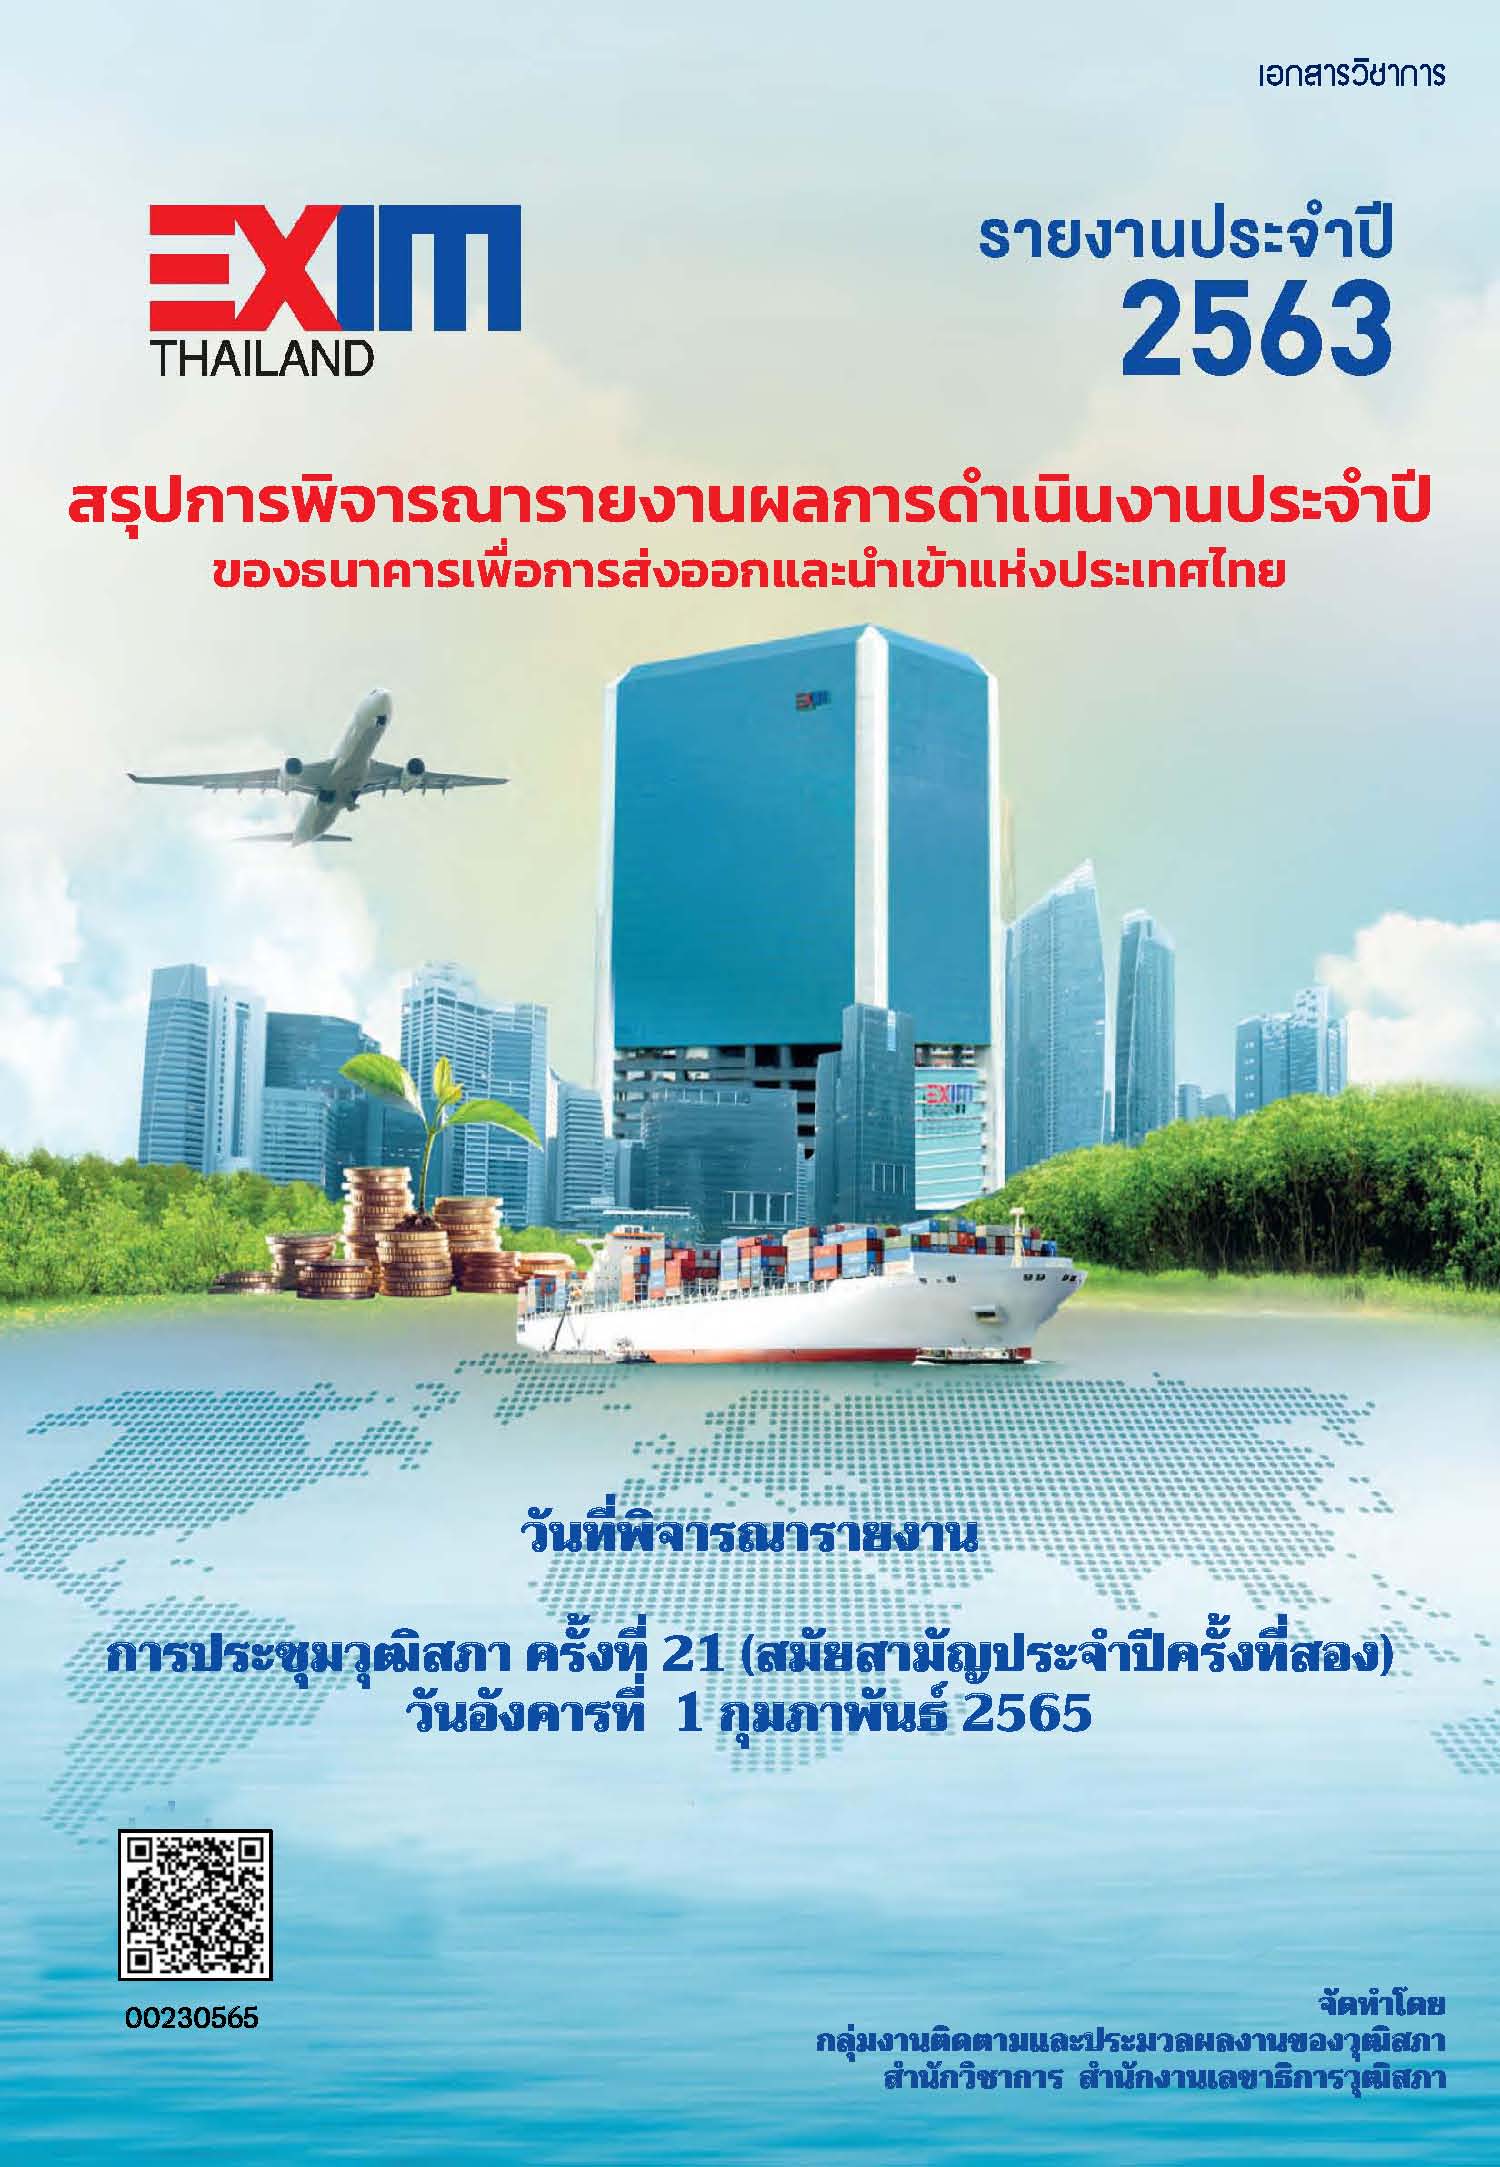 รายงานกิจการประจำปี งบดุล บัญชีกำไรและขาดทุนของธนาคารเพื่อการส่งออกและนำเข้าแห่งประเทศไทย สำหรับปีสิ้นสุดวันที่ ๓๑ ธันวาคม ๒๕๖๓ (ตามมาตรา ๒๖ แห่งพระราชบัญญัติธนาคารเพื่อการส่งออกและนำเข้าแห่งประเทศไทย พ.ศ. ๒๕๓๖)